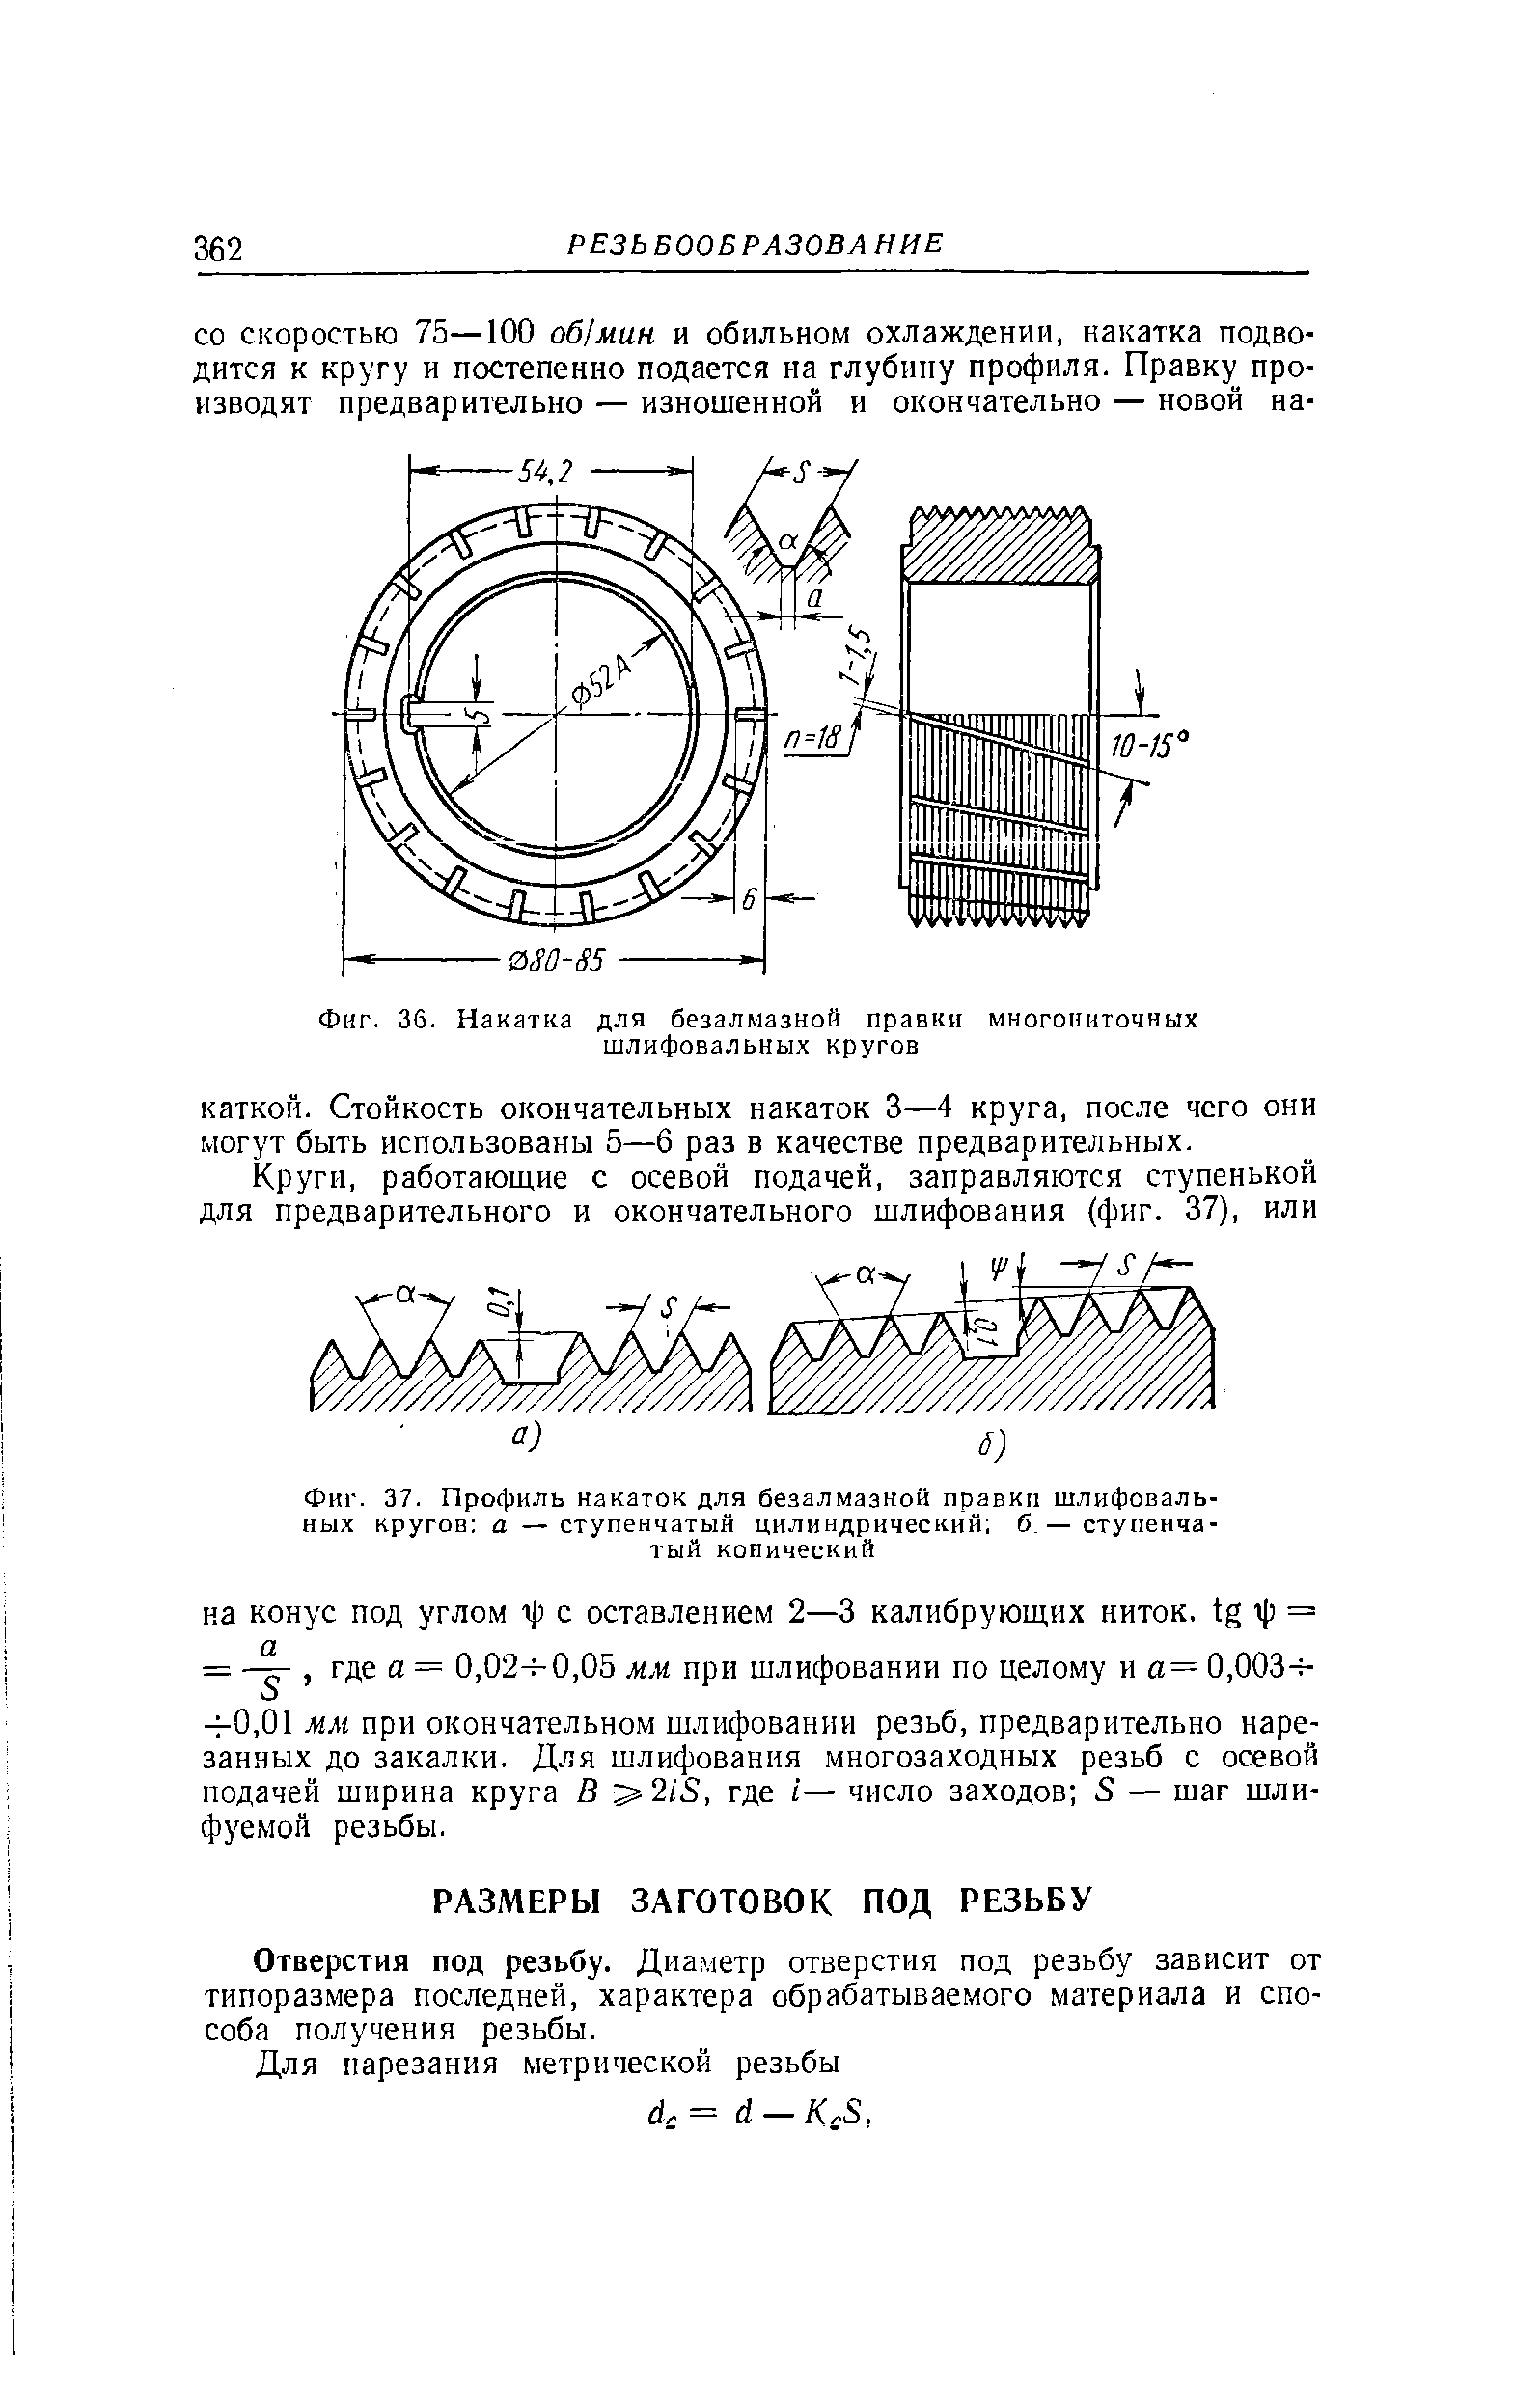 Фиг. 37. Профиль накаток для безалмазной правки шлифовальных кругов а — ступенчатый цилиндрический б.— ступенчатый конический
